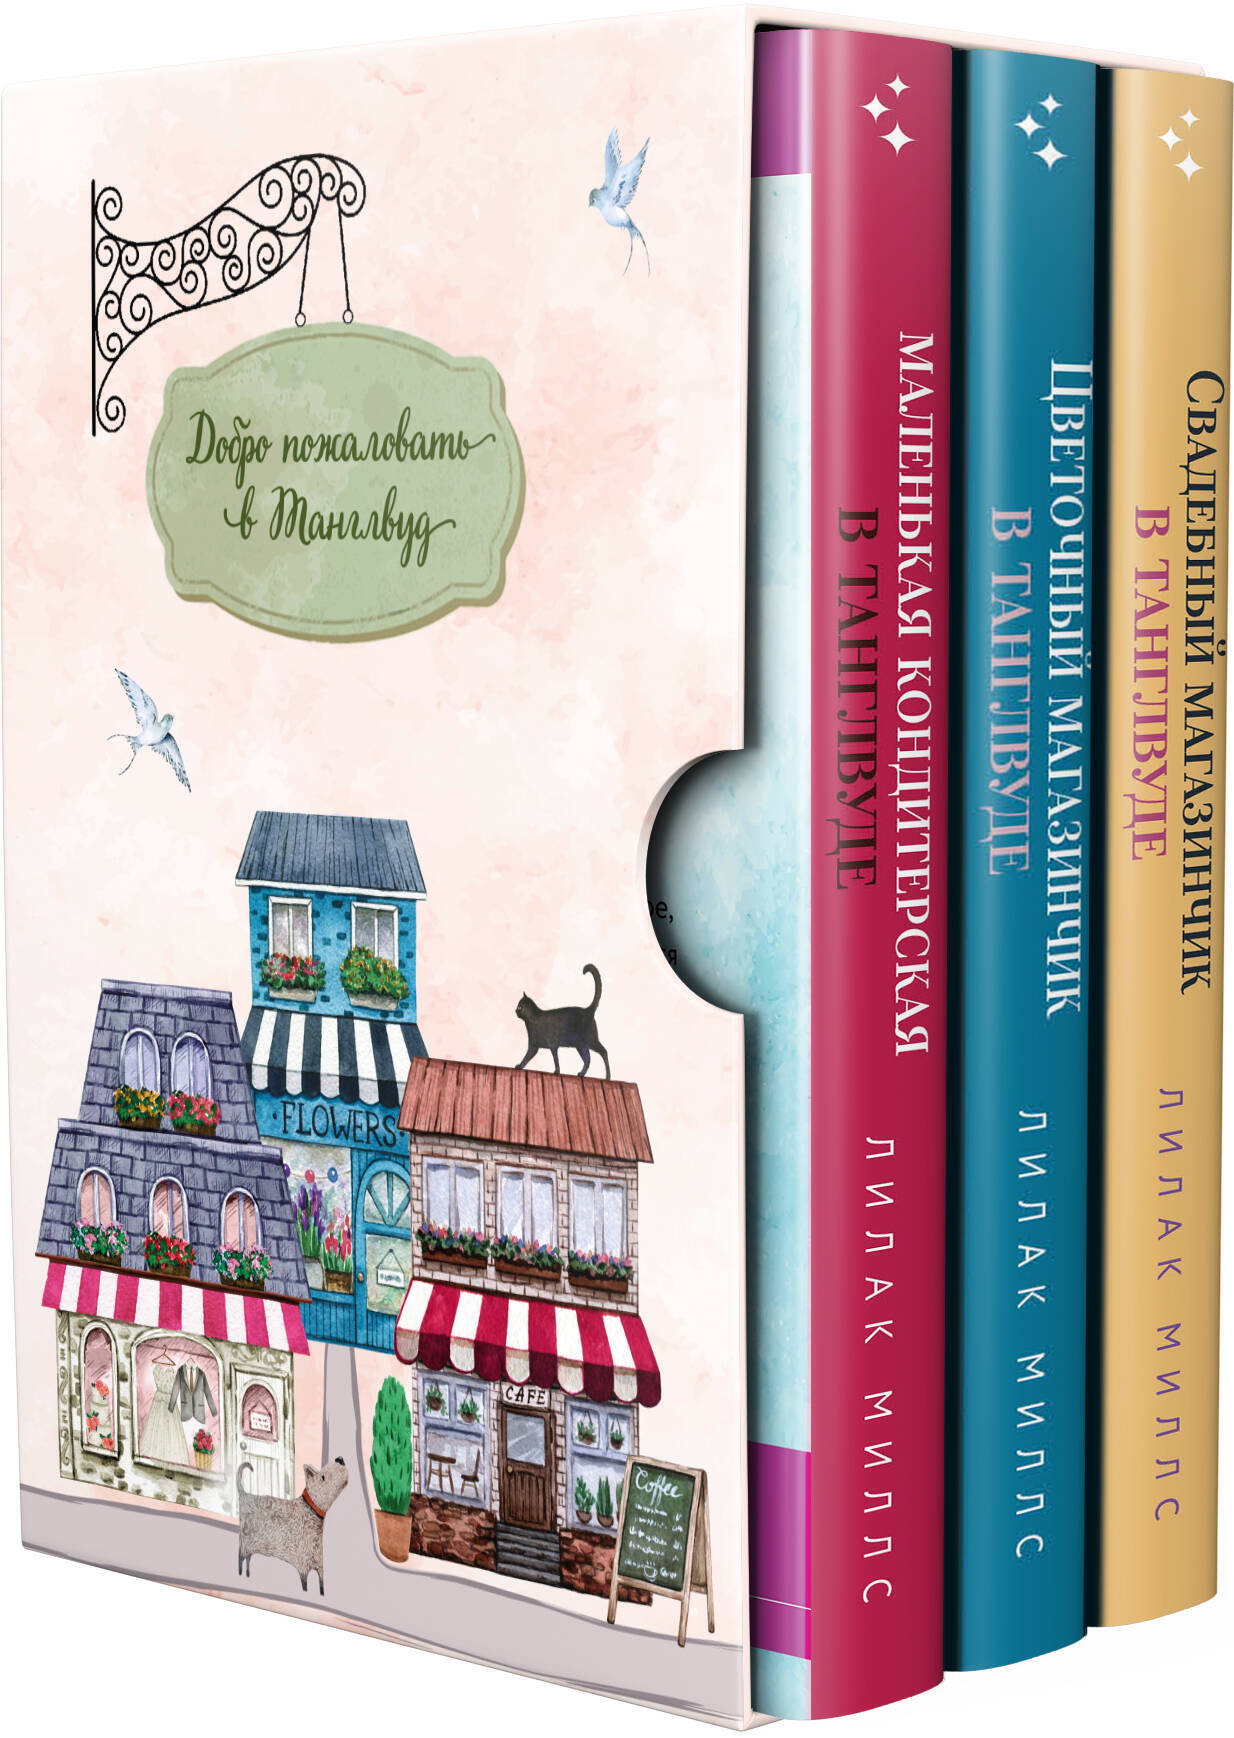  книга Комплект из 3-х книг Лилак Миллс в подарочном футляре (Маленькая кондитерская в Танглвуде (#1) + Цветочный магазинчик в Танглвуде (#2) + Свадебный магазинчик в Танглвуде (#3))